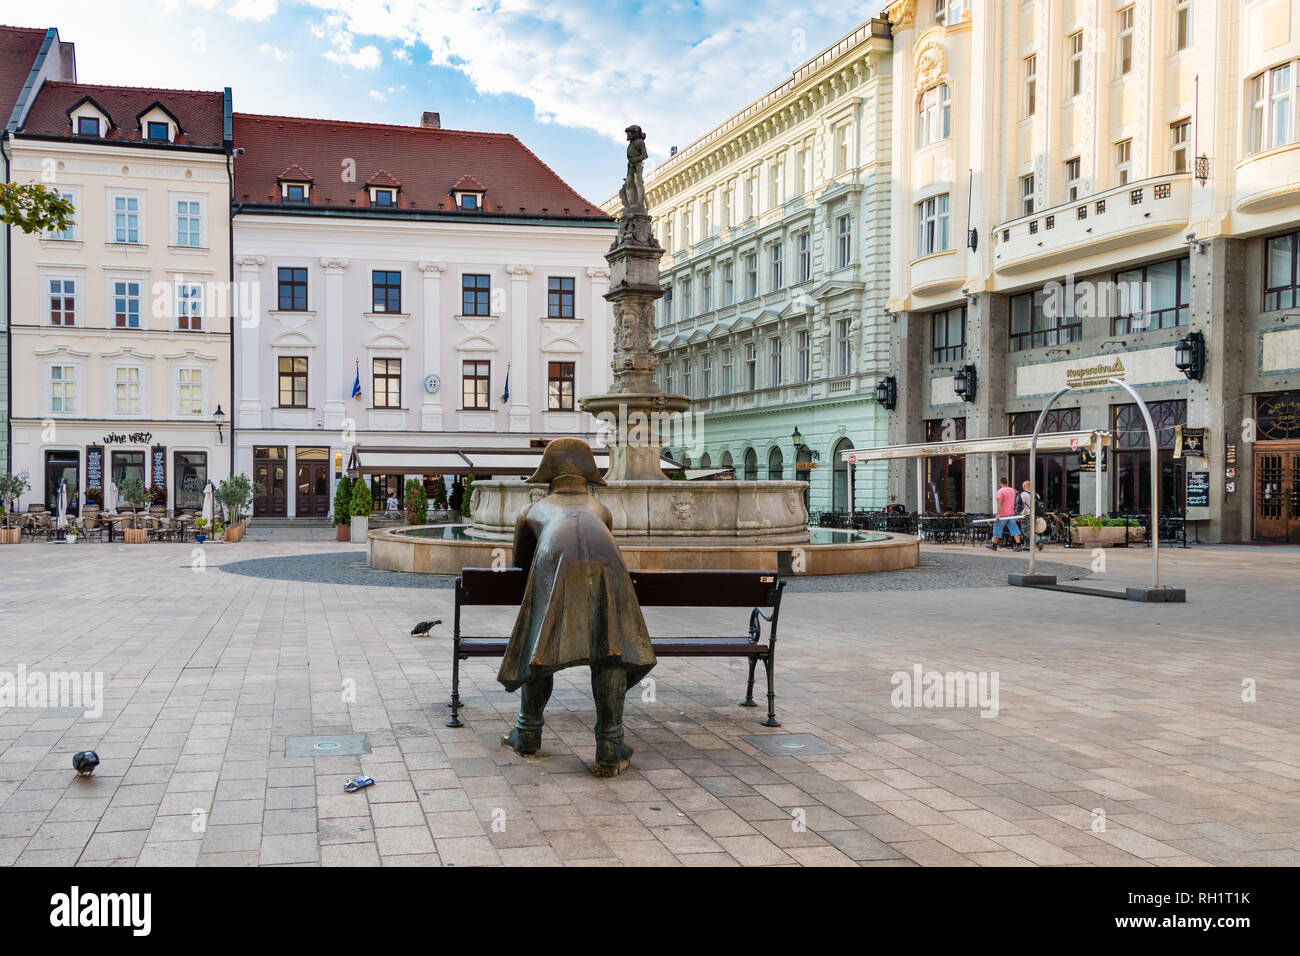 BRATISLAVA, Slovacchia - 20 agosto 2018: statua di bronzo di un soldato appoggiato sulla piazza principale di Bratislava Foto Stock